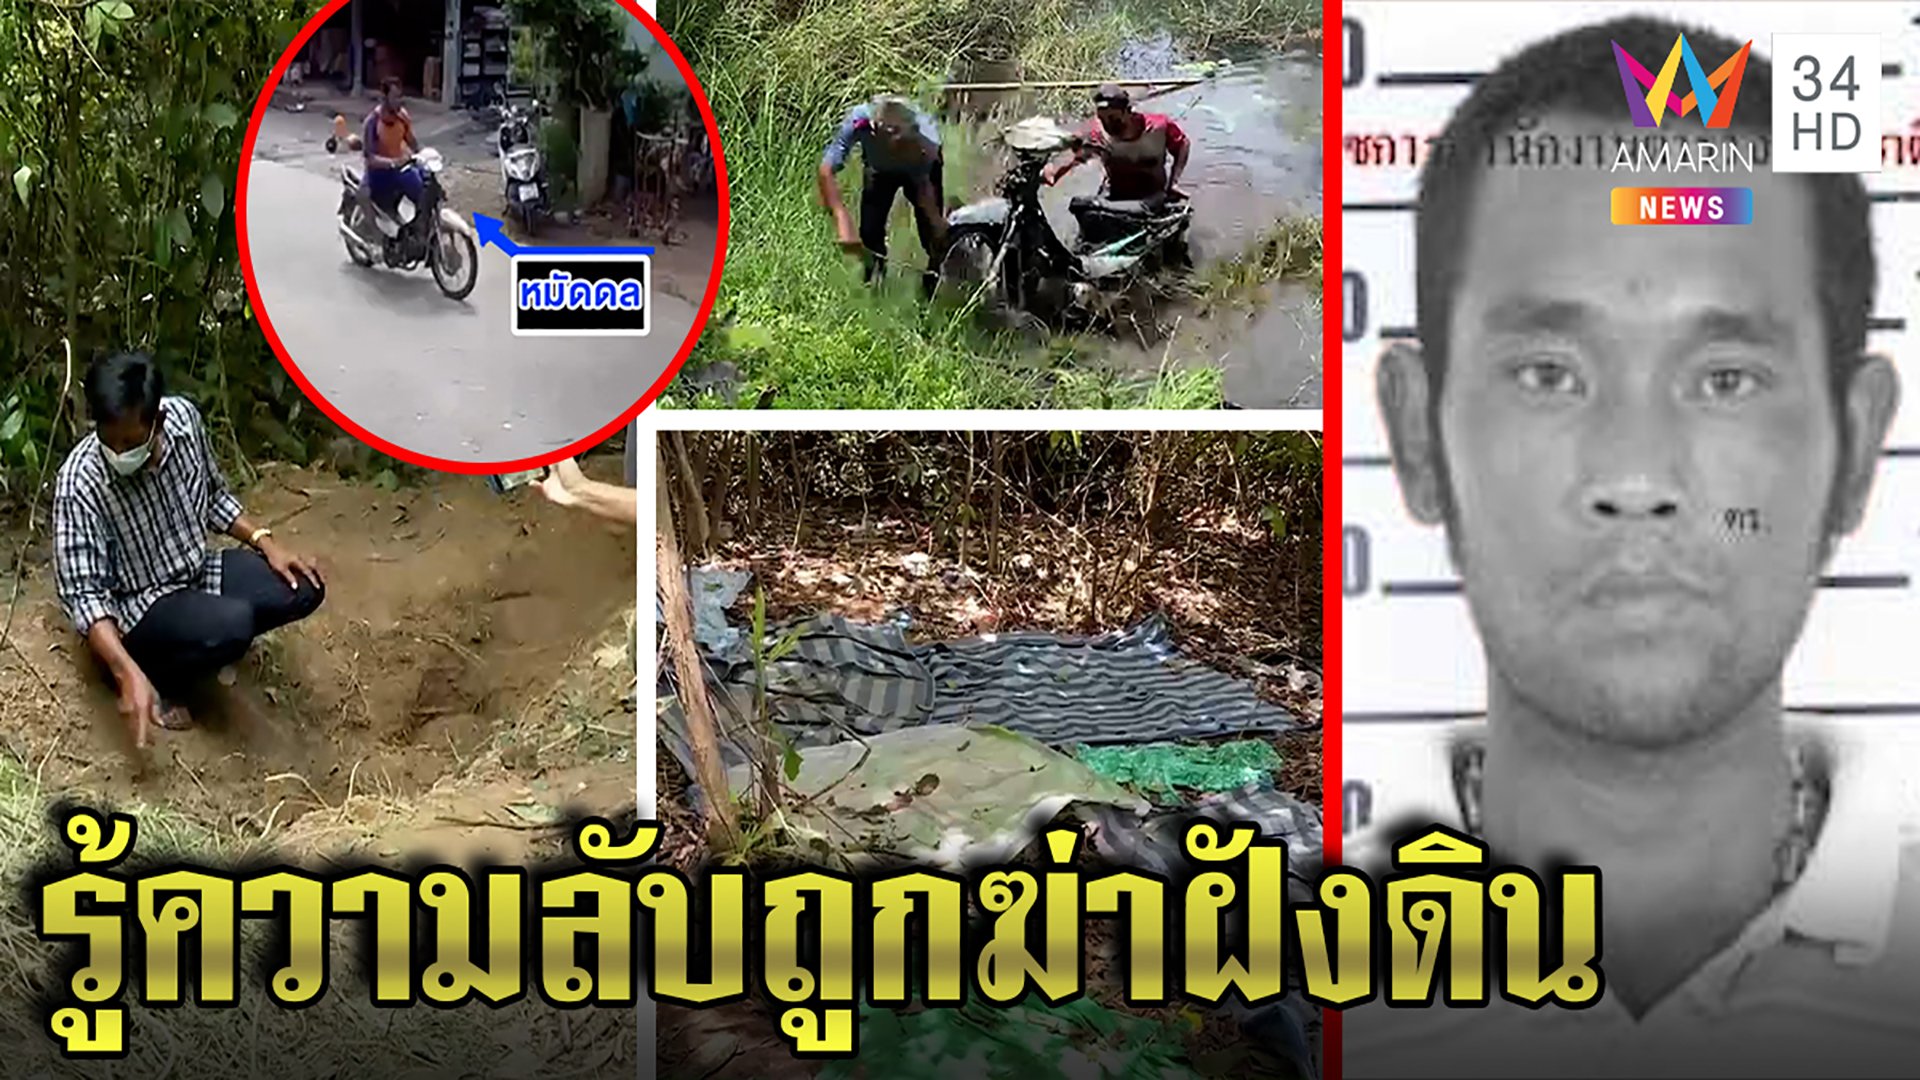 แก๊งเหี้ยมฆ่าฝังดินราดน้ำมันหนุ่มไทย คาดต่างด้าวรุมฆ่าปิดปากเห็นที่กบดานเข้าไทย | ทุบโต๊ะข่าว | 1 มิ.ย. 65 | AMARIN TVHD34